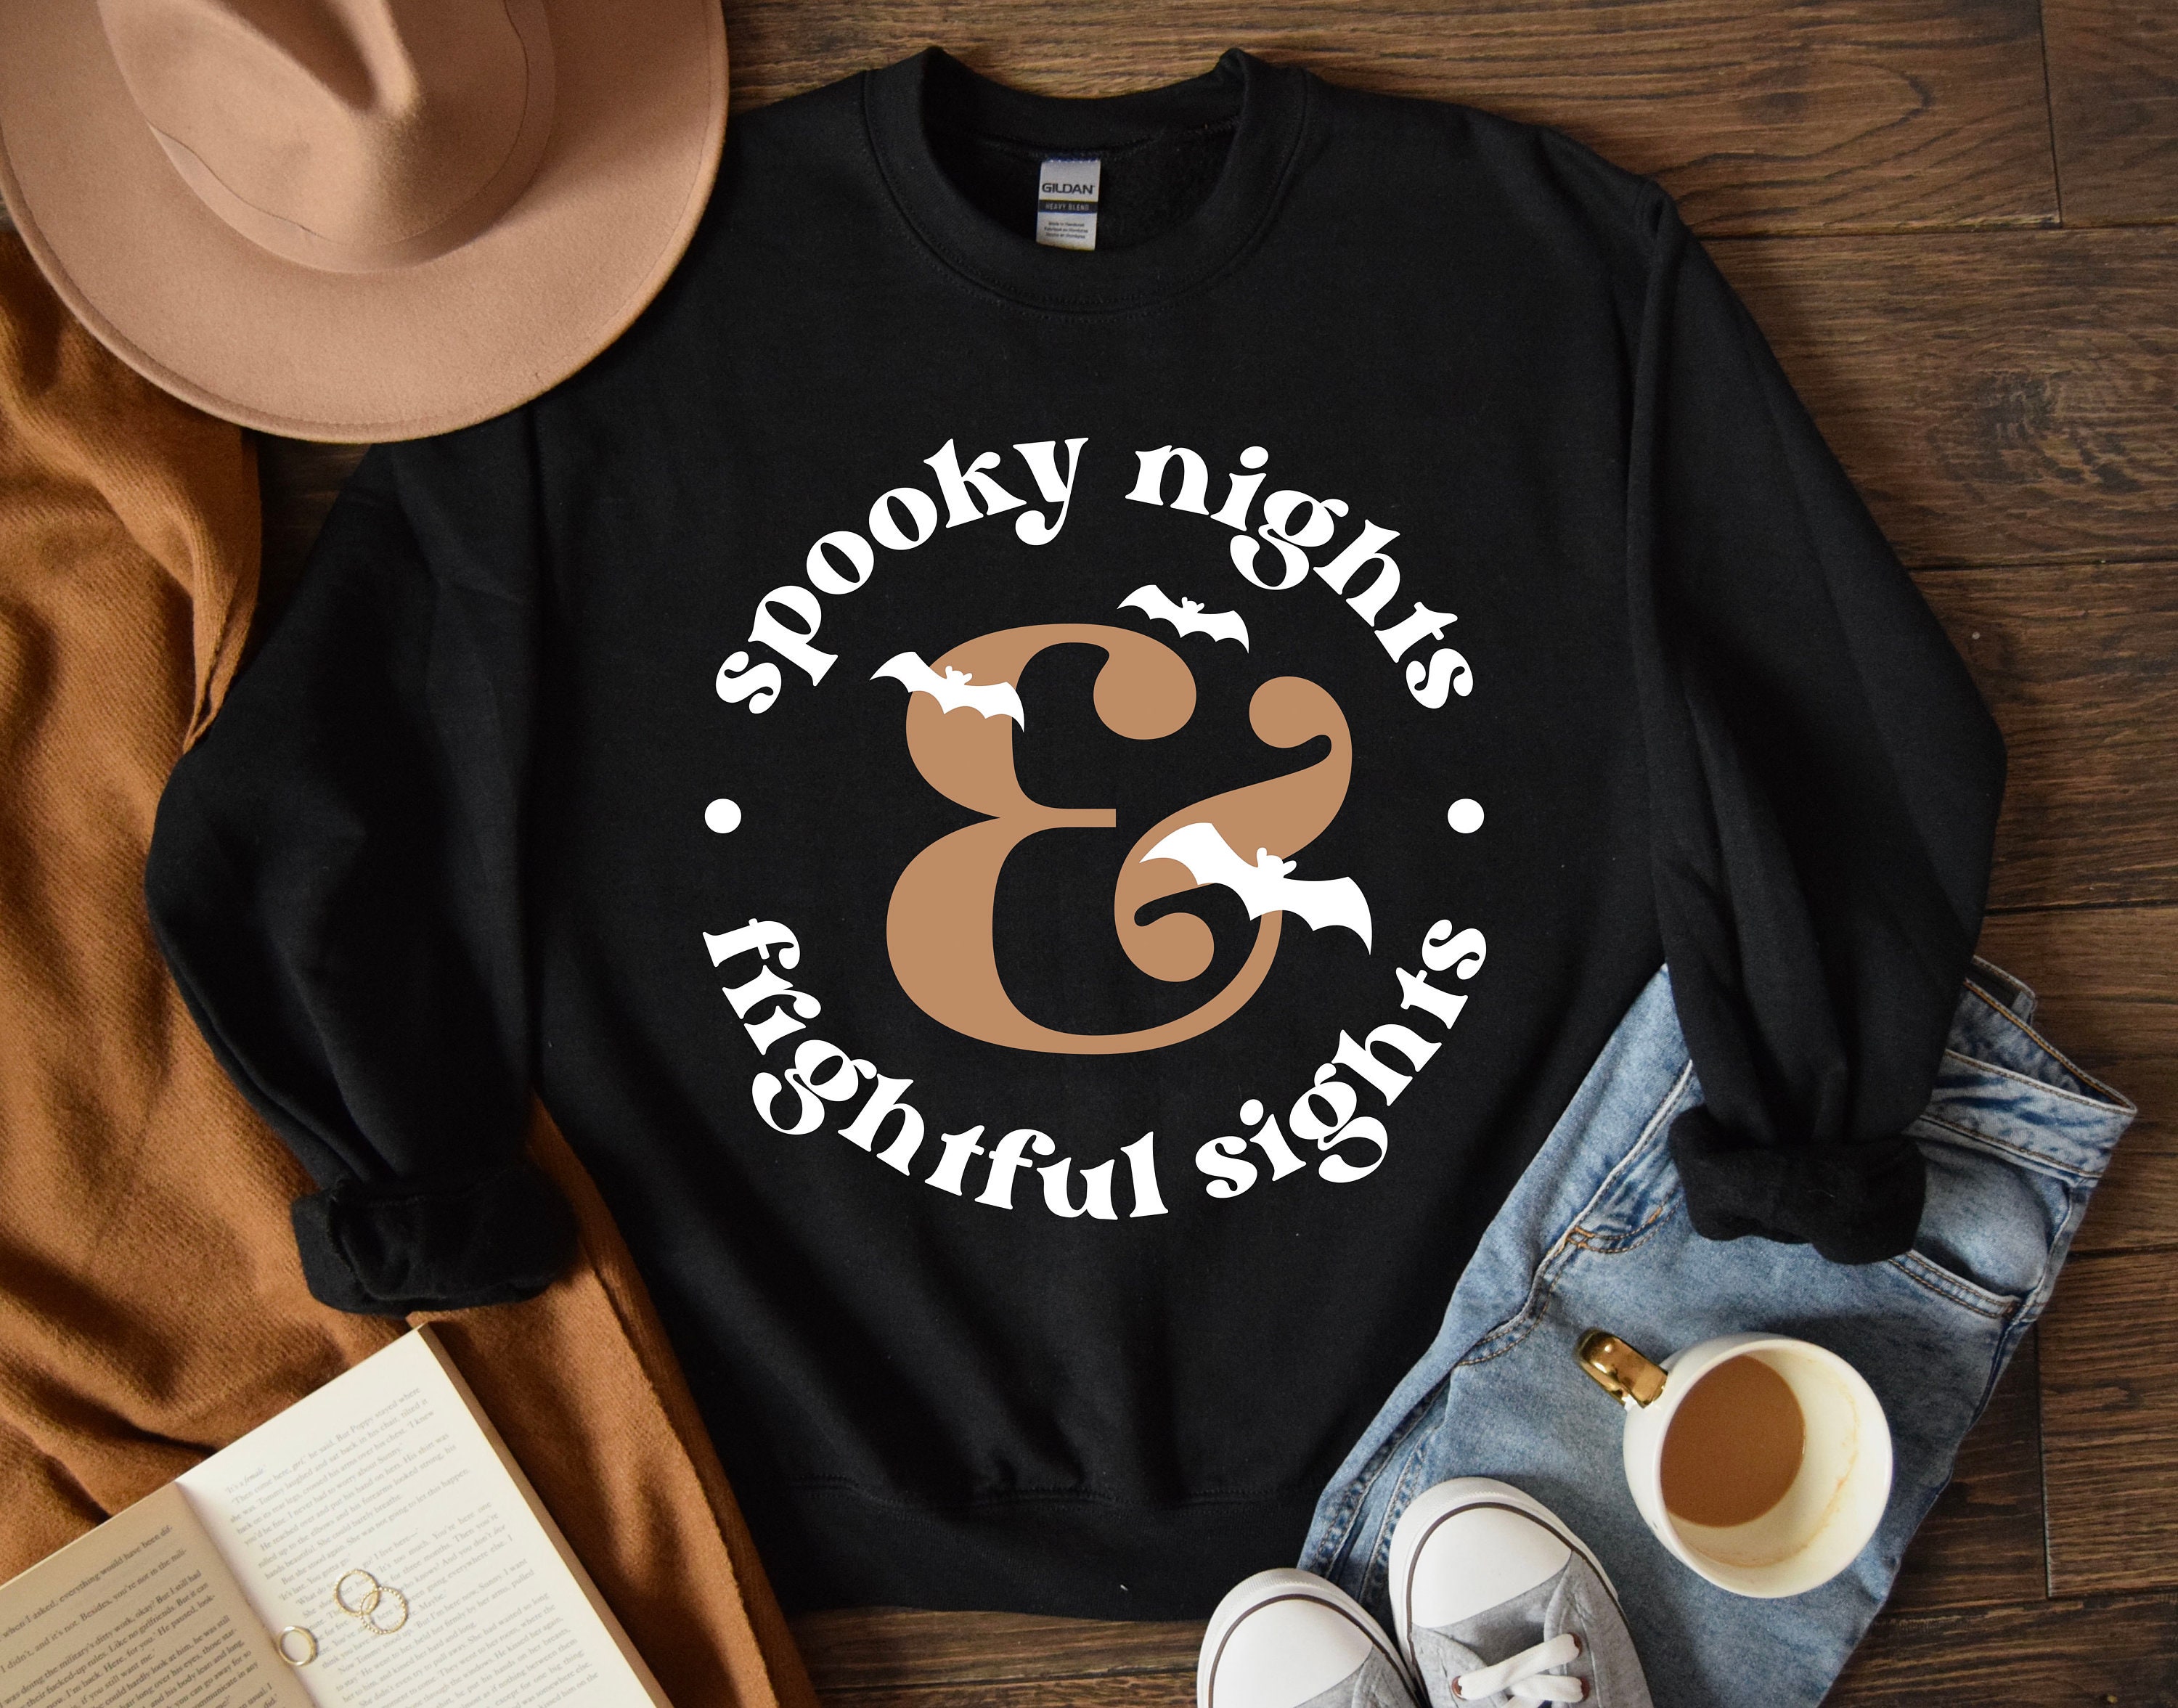 Discover Halloween Sweatshirt, Spooky Night & Frightful Sights, Spooky Shirt, Halloween Sweater, Spooky Season, Halloween Witches, Halloween Gift